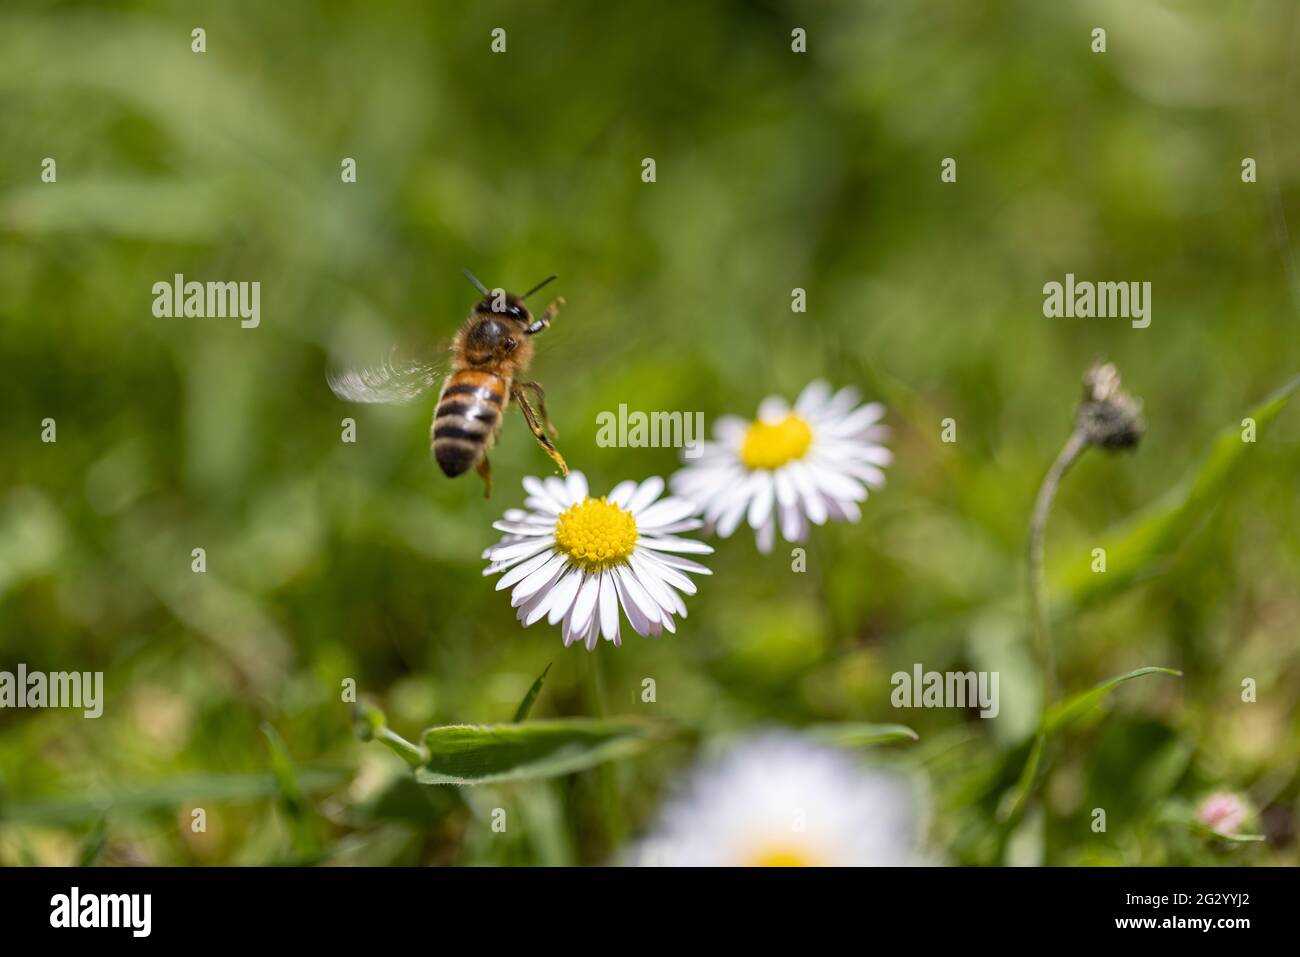 British honey bee, flying away from a daisy Stock Photo